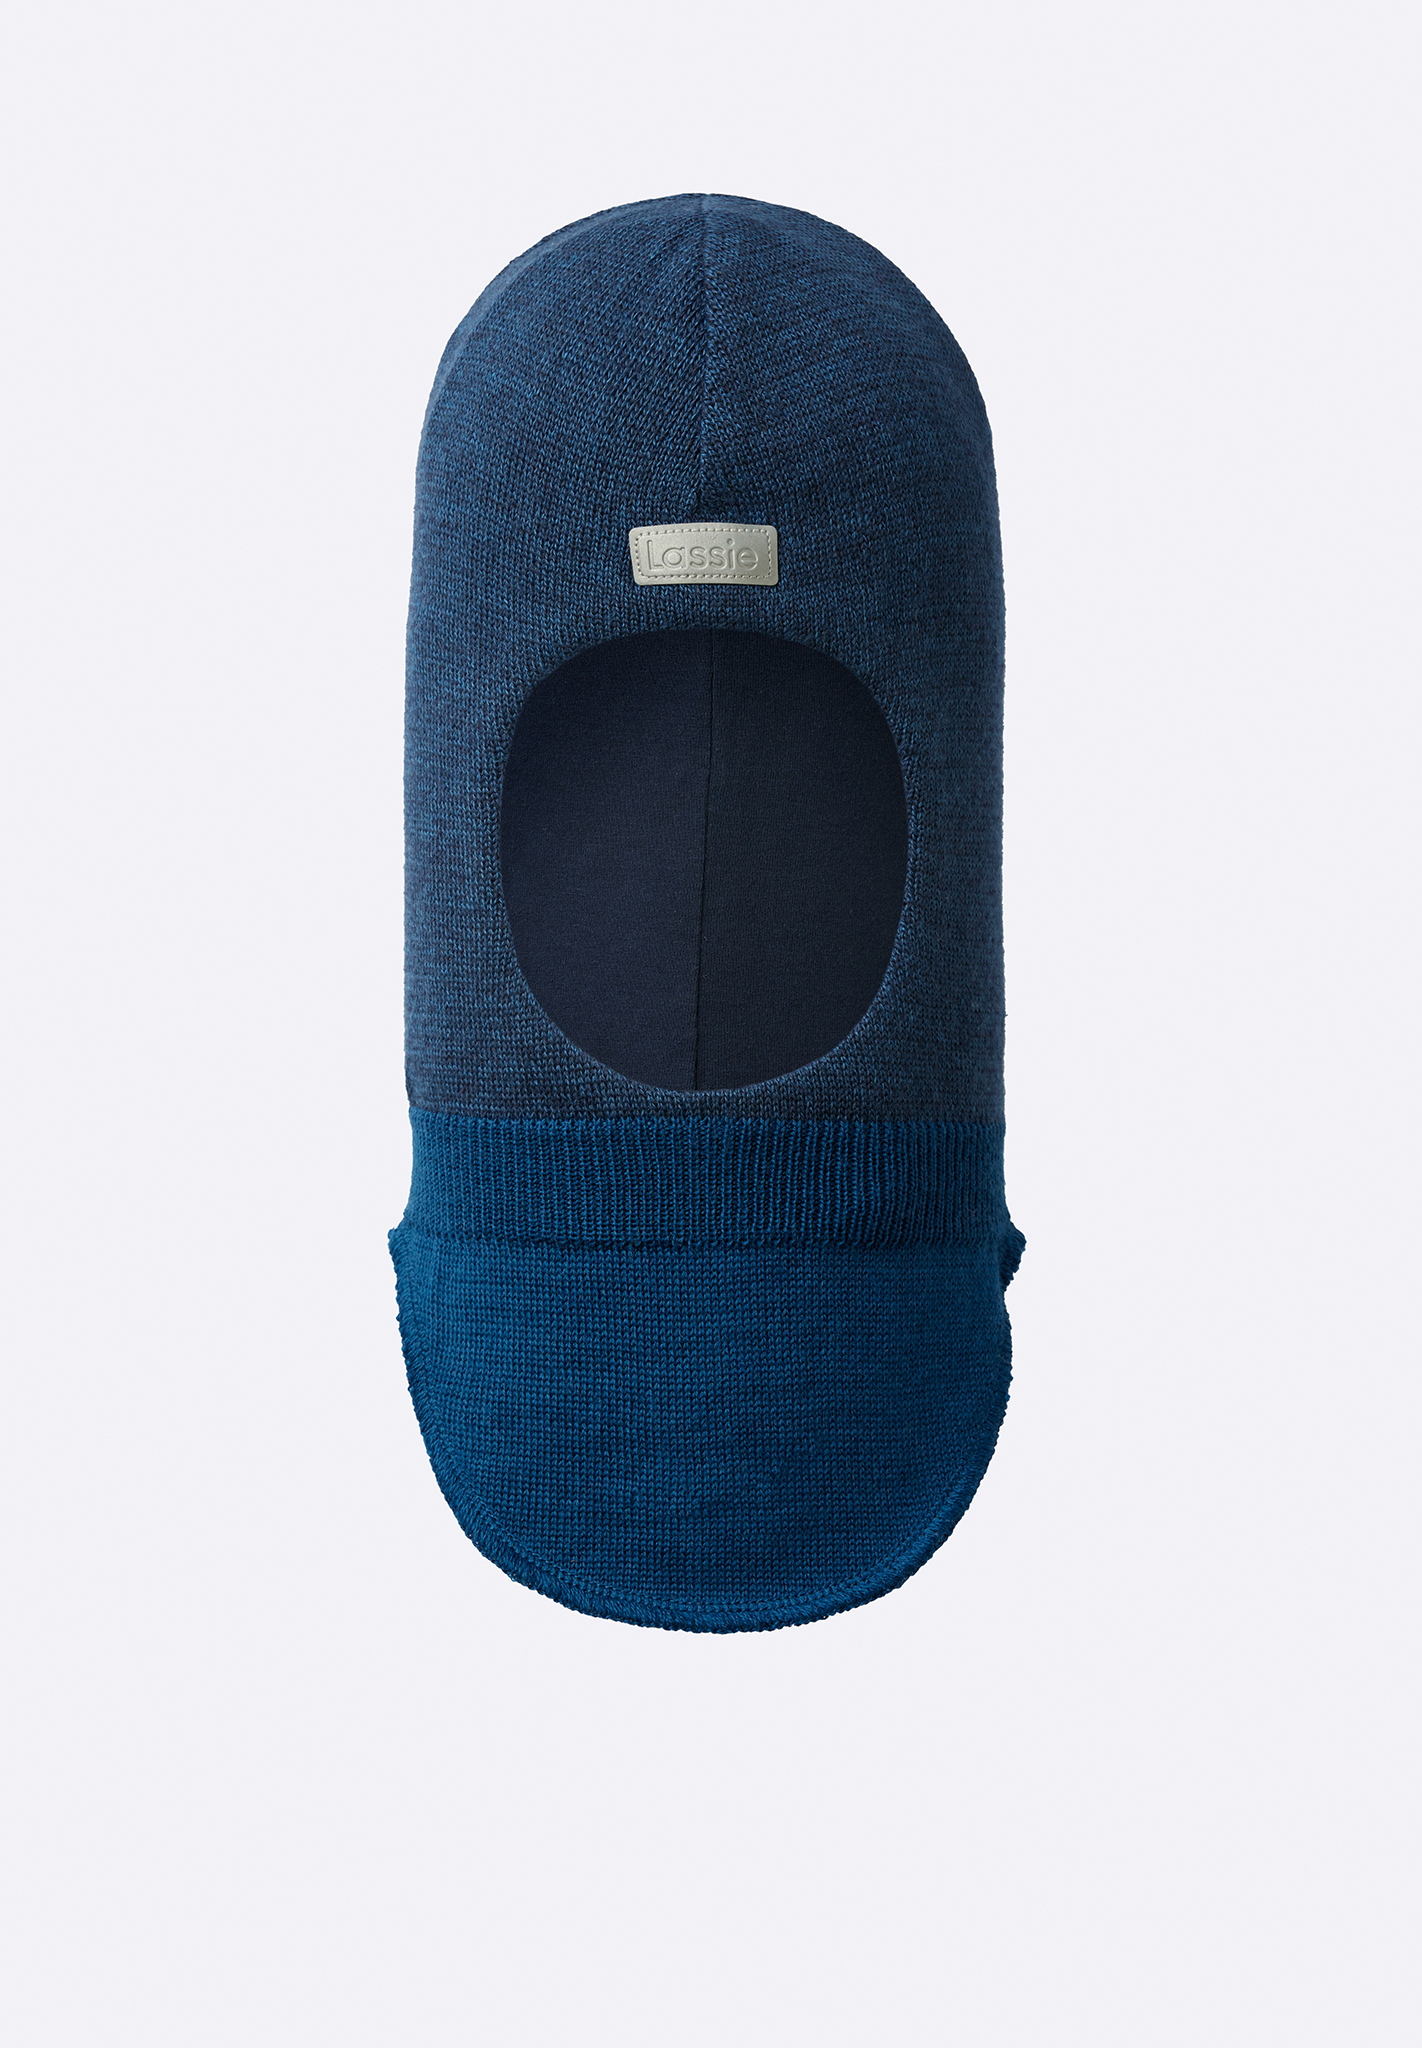 Шапка-шлем Lassie для мальчиков, синяя, размер 046, 7300016B6821046 синяя шапка шлем из шерсти jan